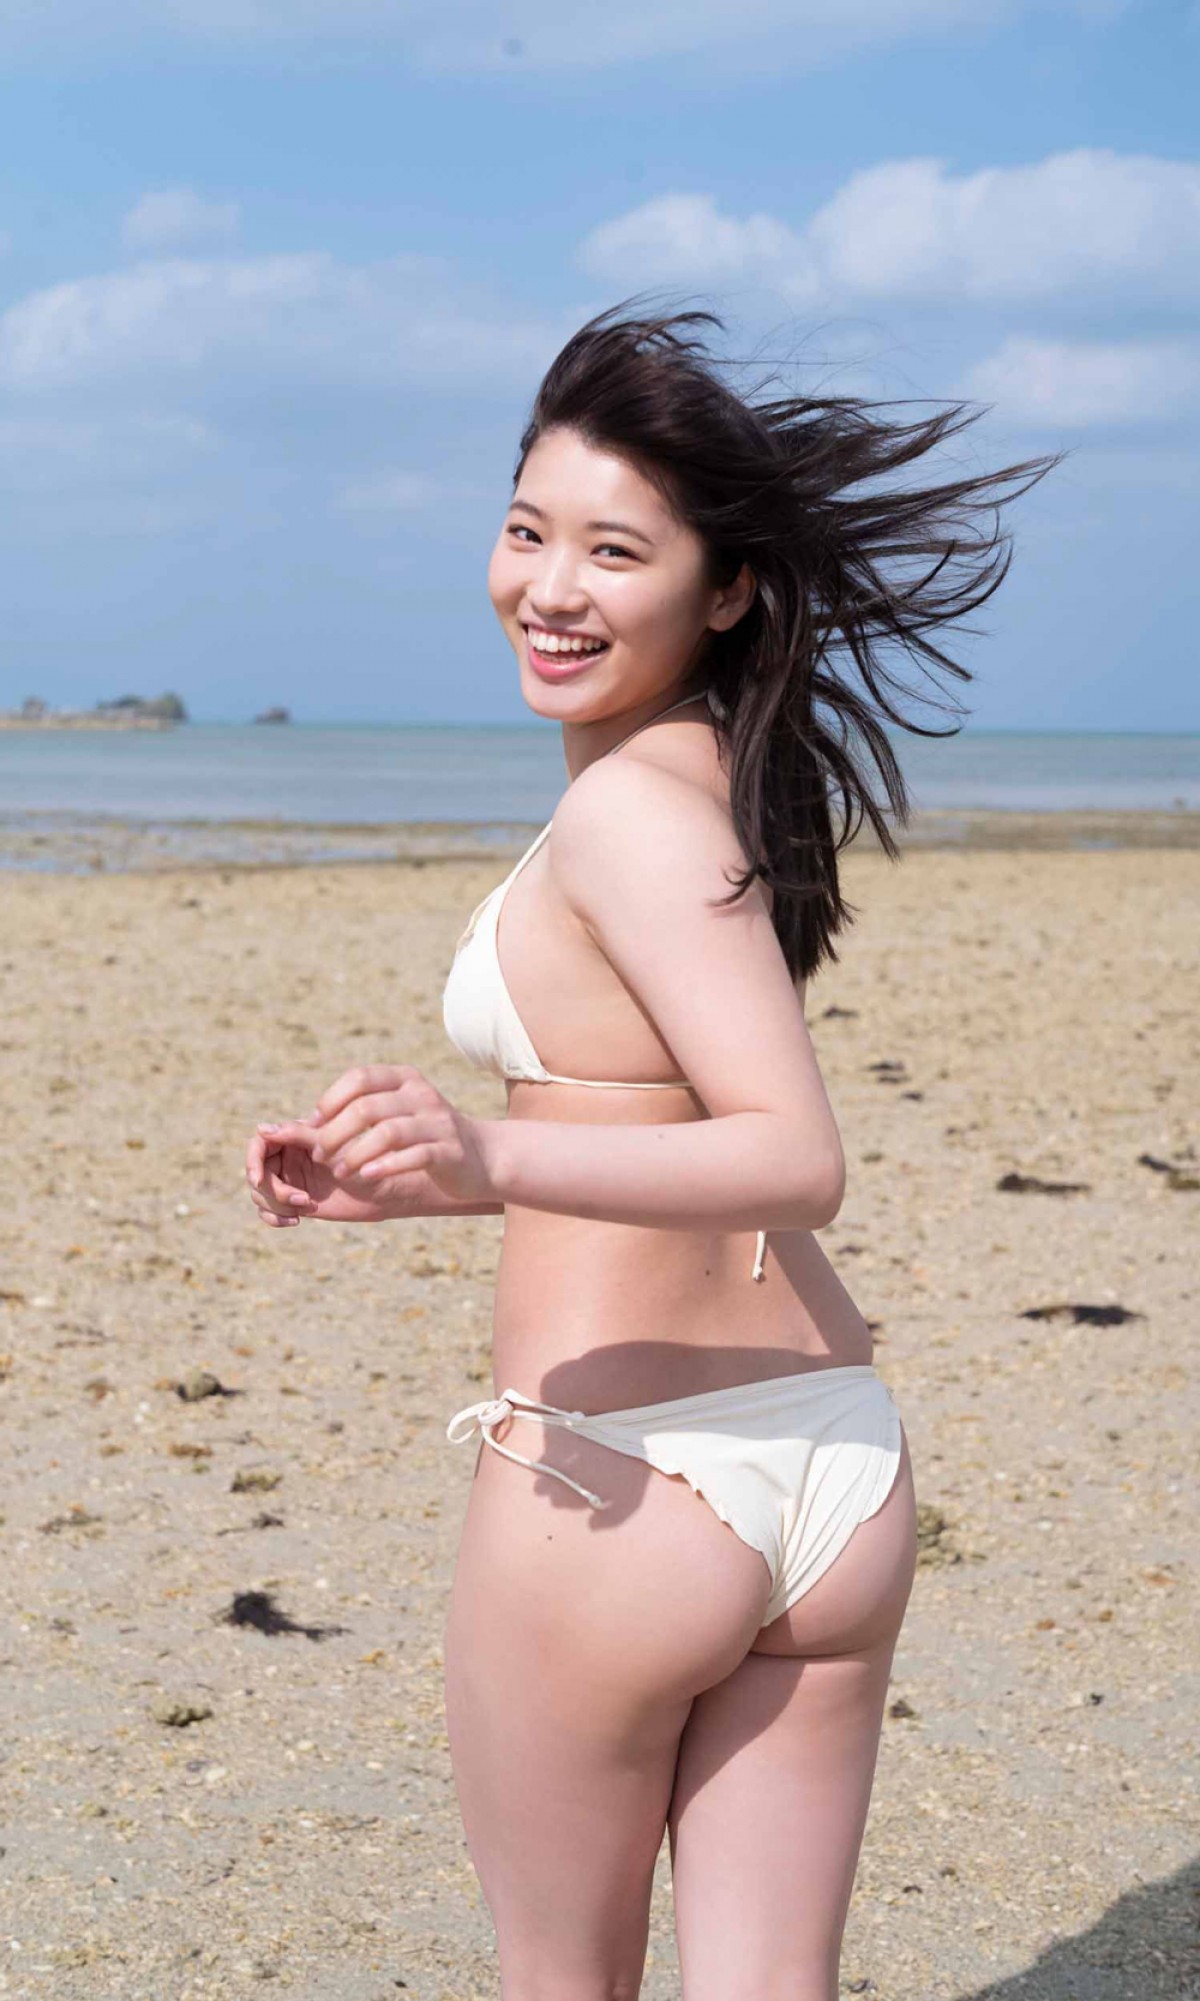 「制コレ18」古田愛理、17歳の“美少女” 愛くるしいビキニショット